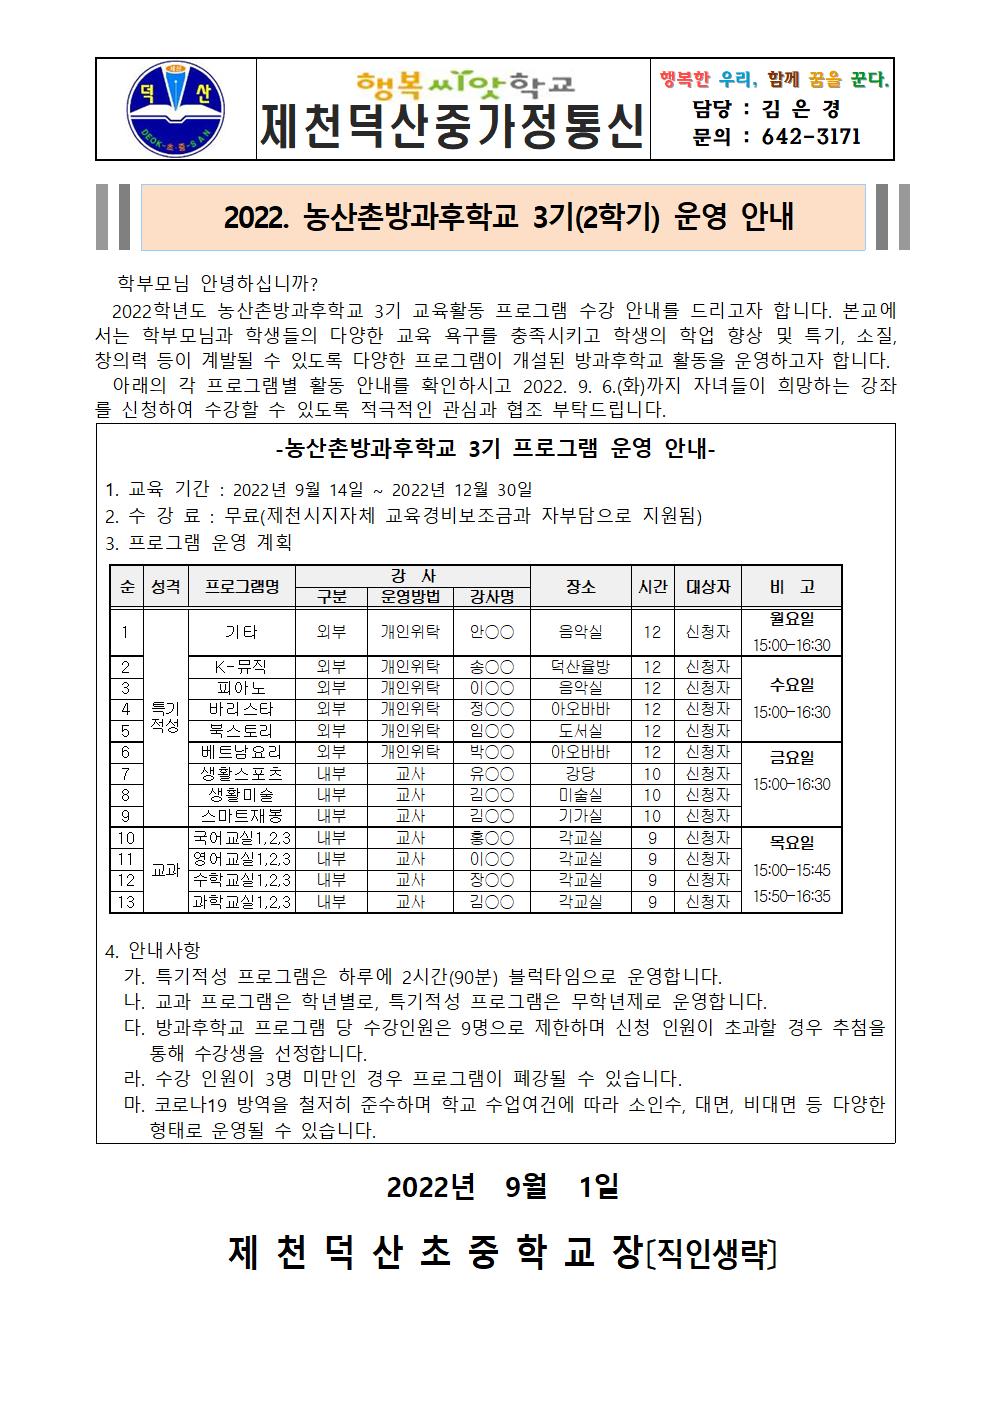 2022. 농산촌방과후학교 2학기(3기) 수강 신청 가정통신문001